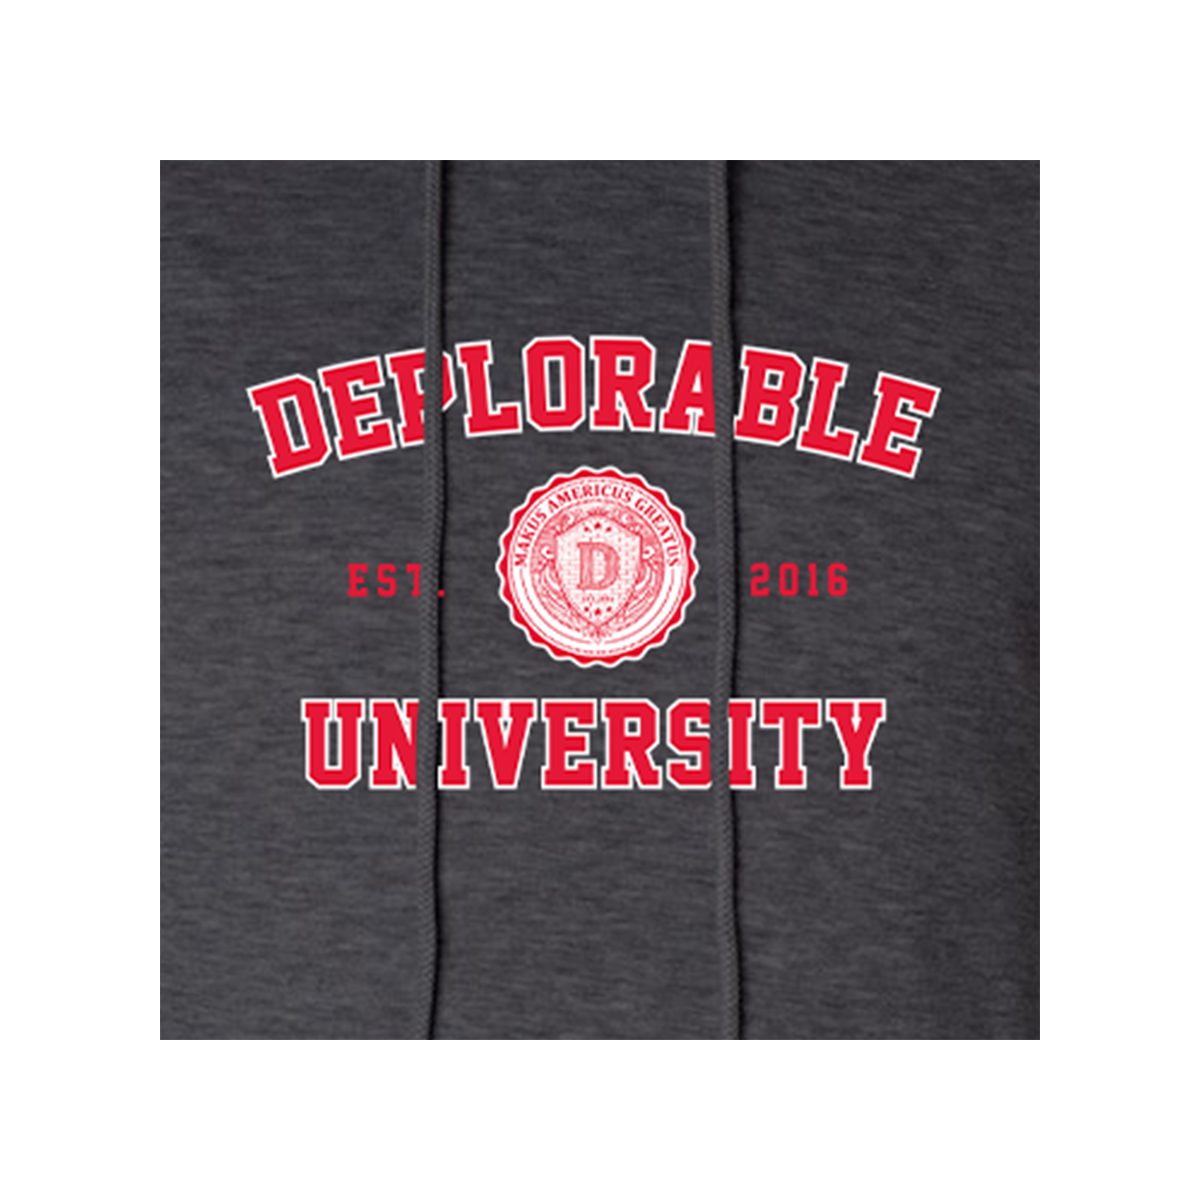 Deplorable University Hoodie Sweatshirt